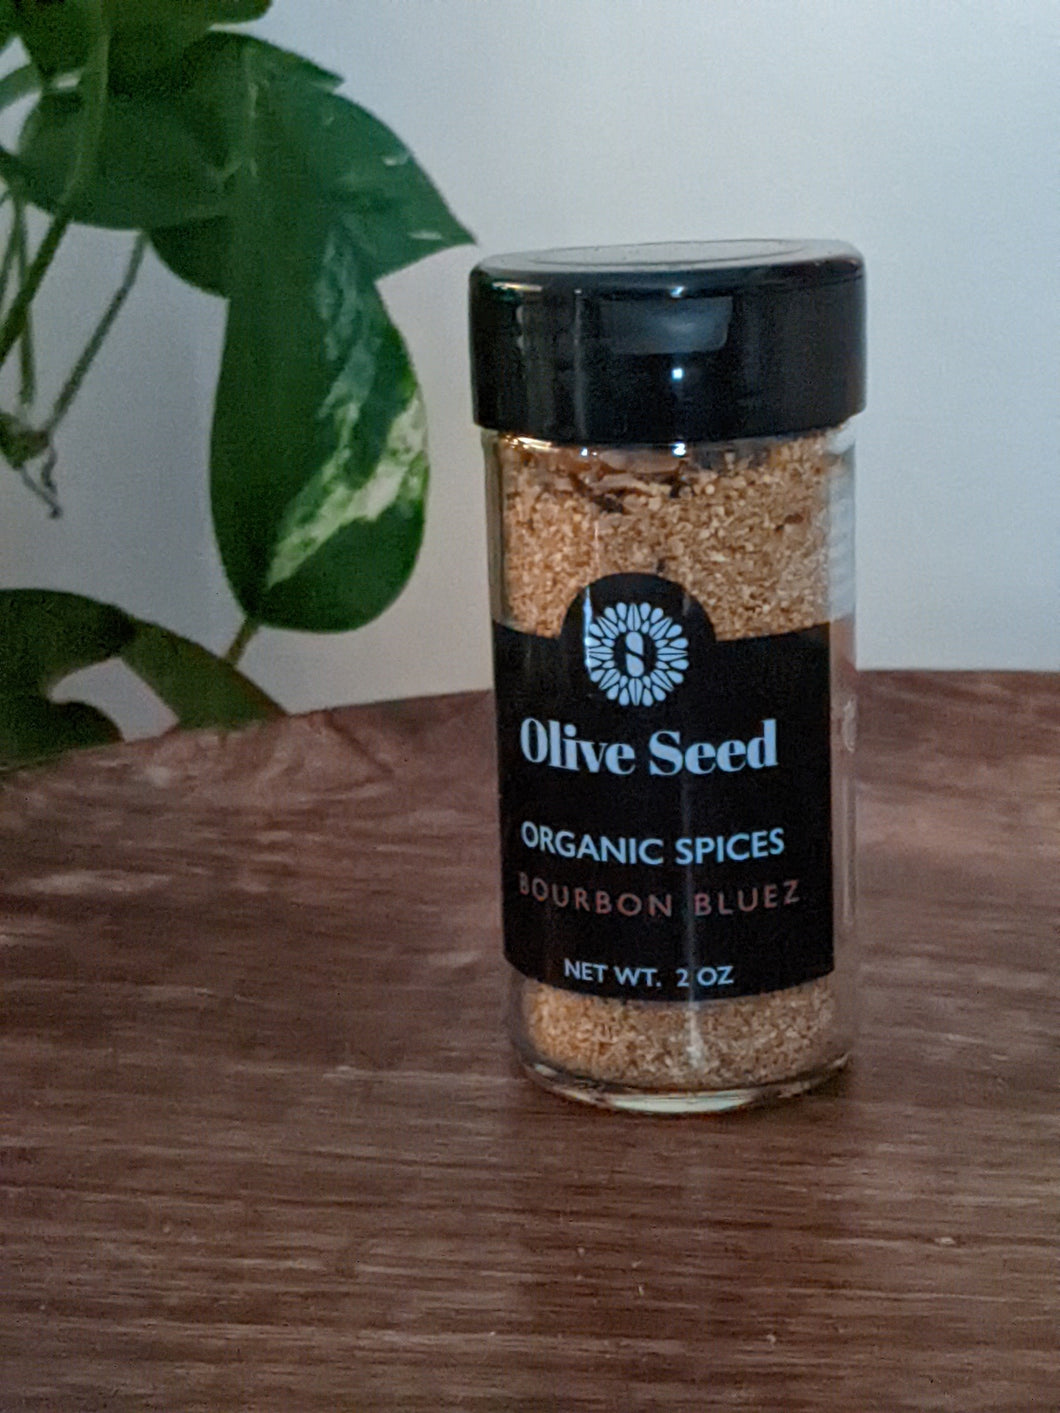 Bourbon Bluez 2 oz spice blend. Olive Seed